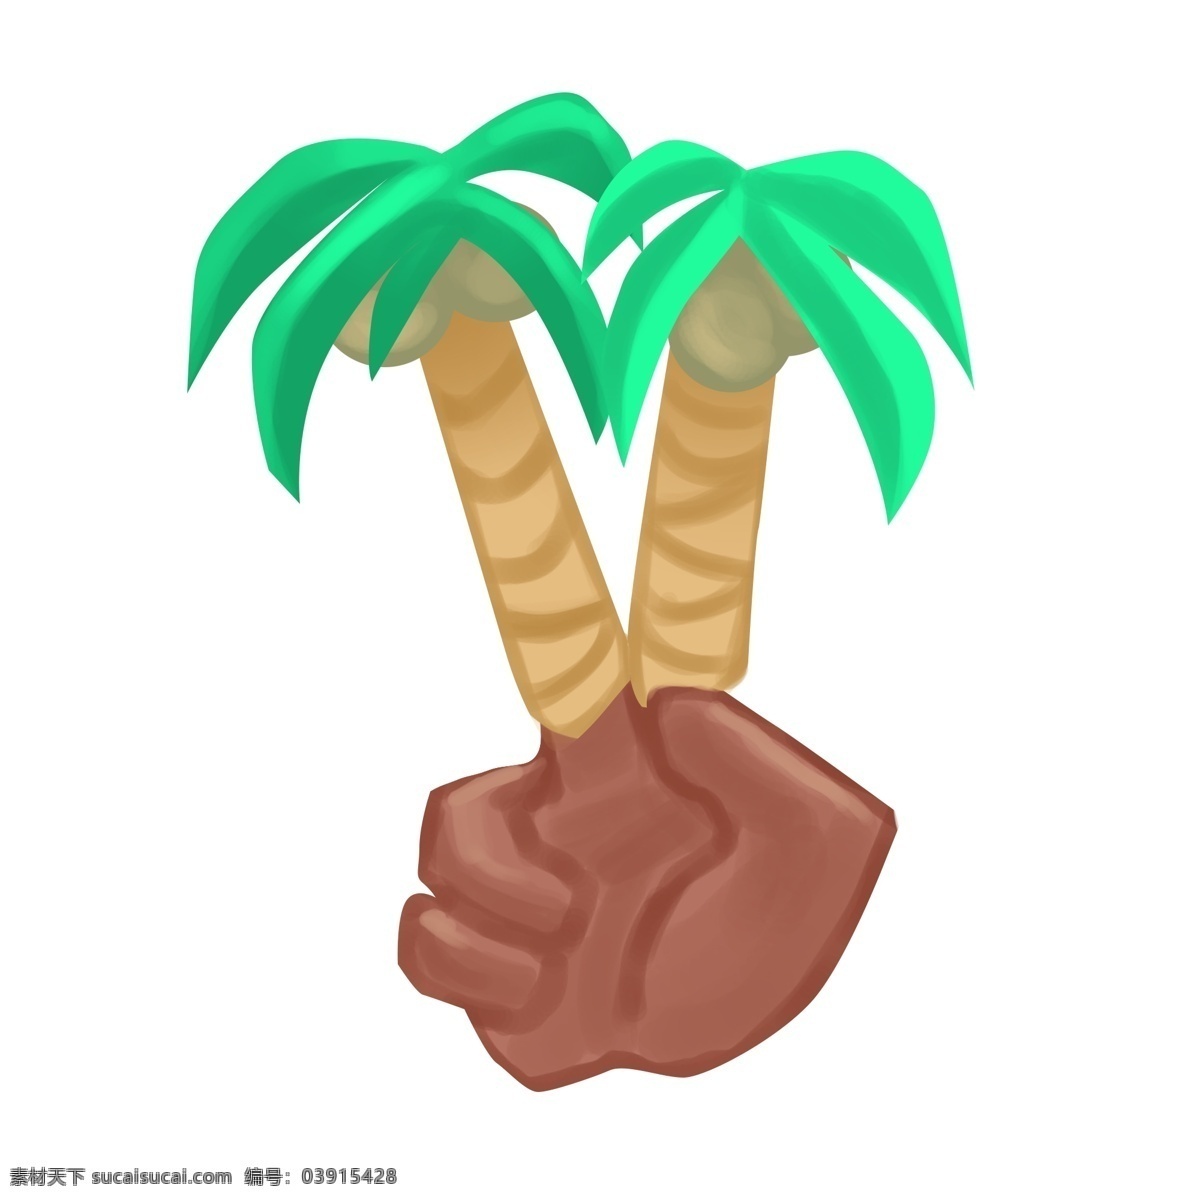 创意 椰树 手势 插画 椰树手势 棕色的手掌 卡通手势插画 手势插画 绿色的叶子